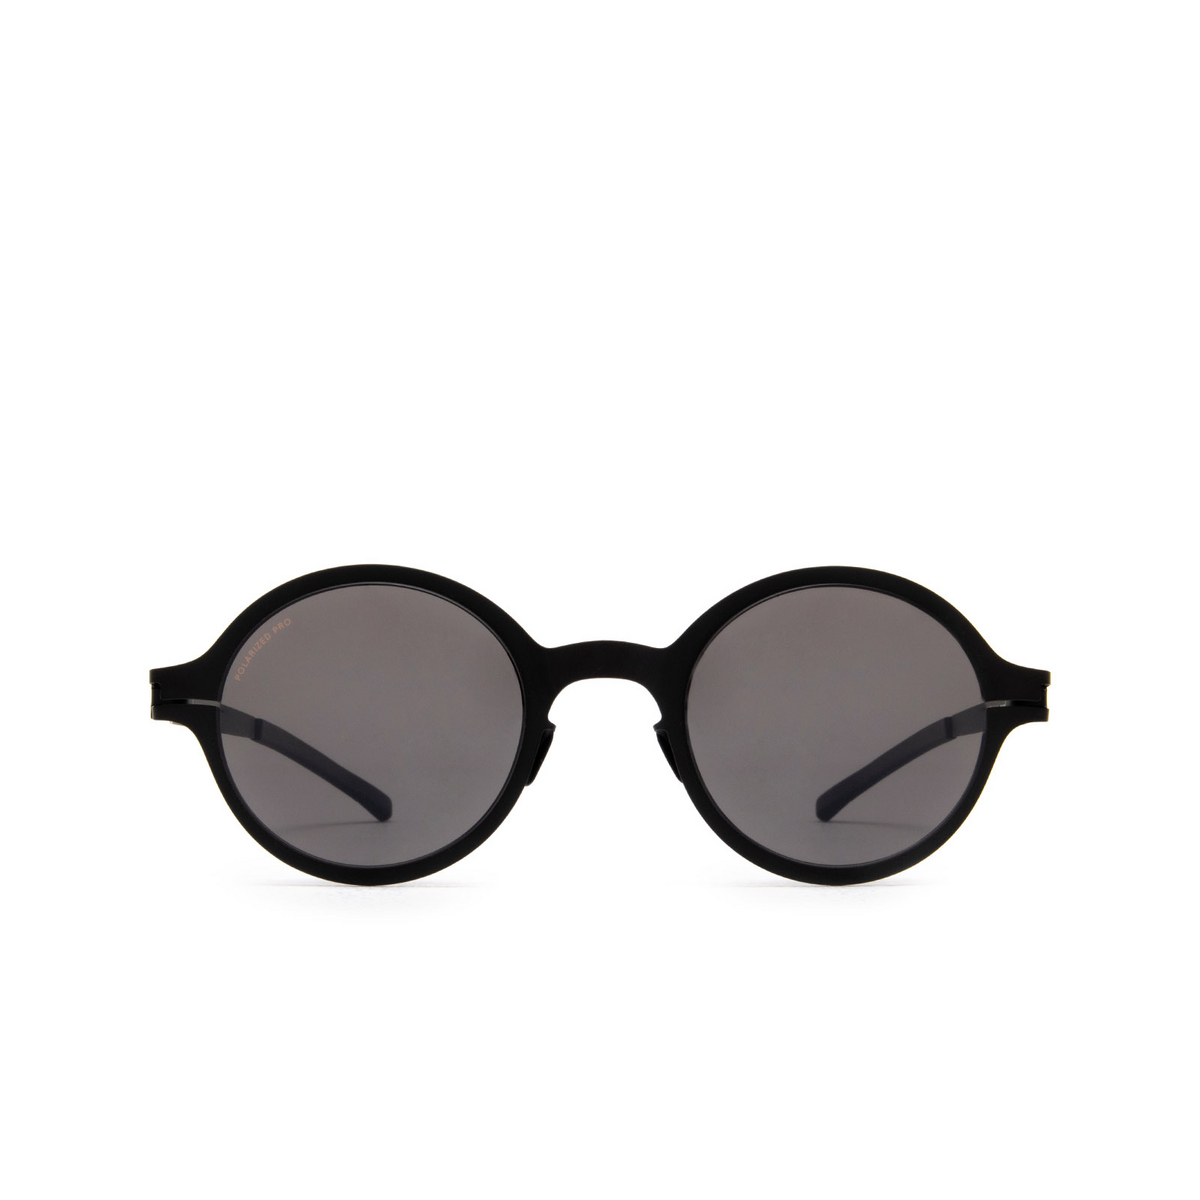 Mykita NESTOR Sunglasses 002 Black - front view